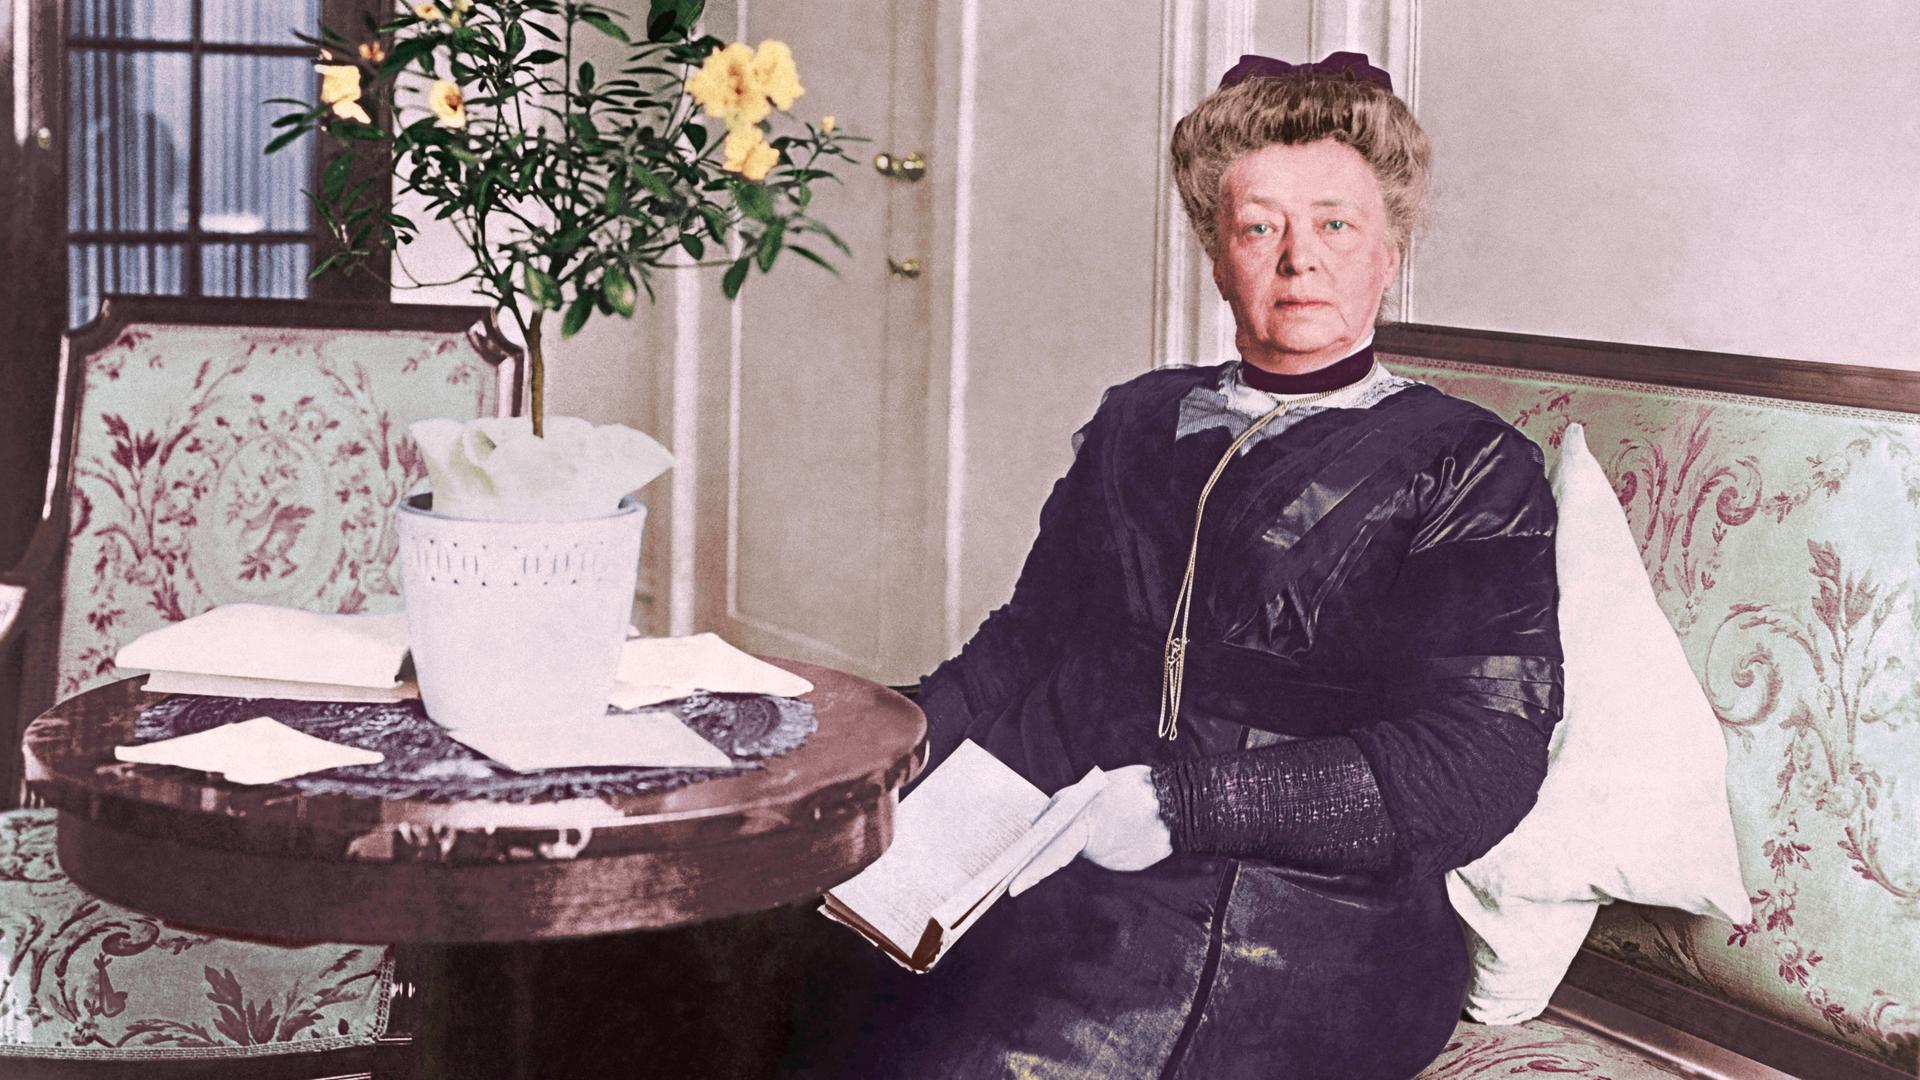 Bertha von Suttner sitzt in der Kulisse eines bürgerlichen Haushalts um 1900 in formaler Kleidung auf einem Sofa mit Blumenmuster an einem runden Tisch.